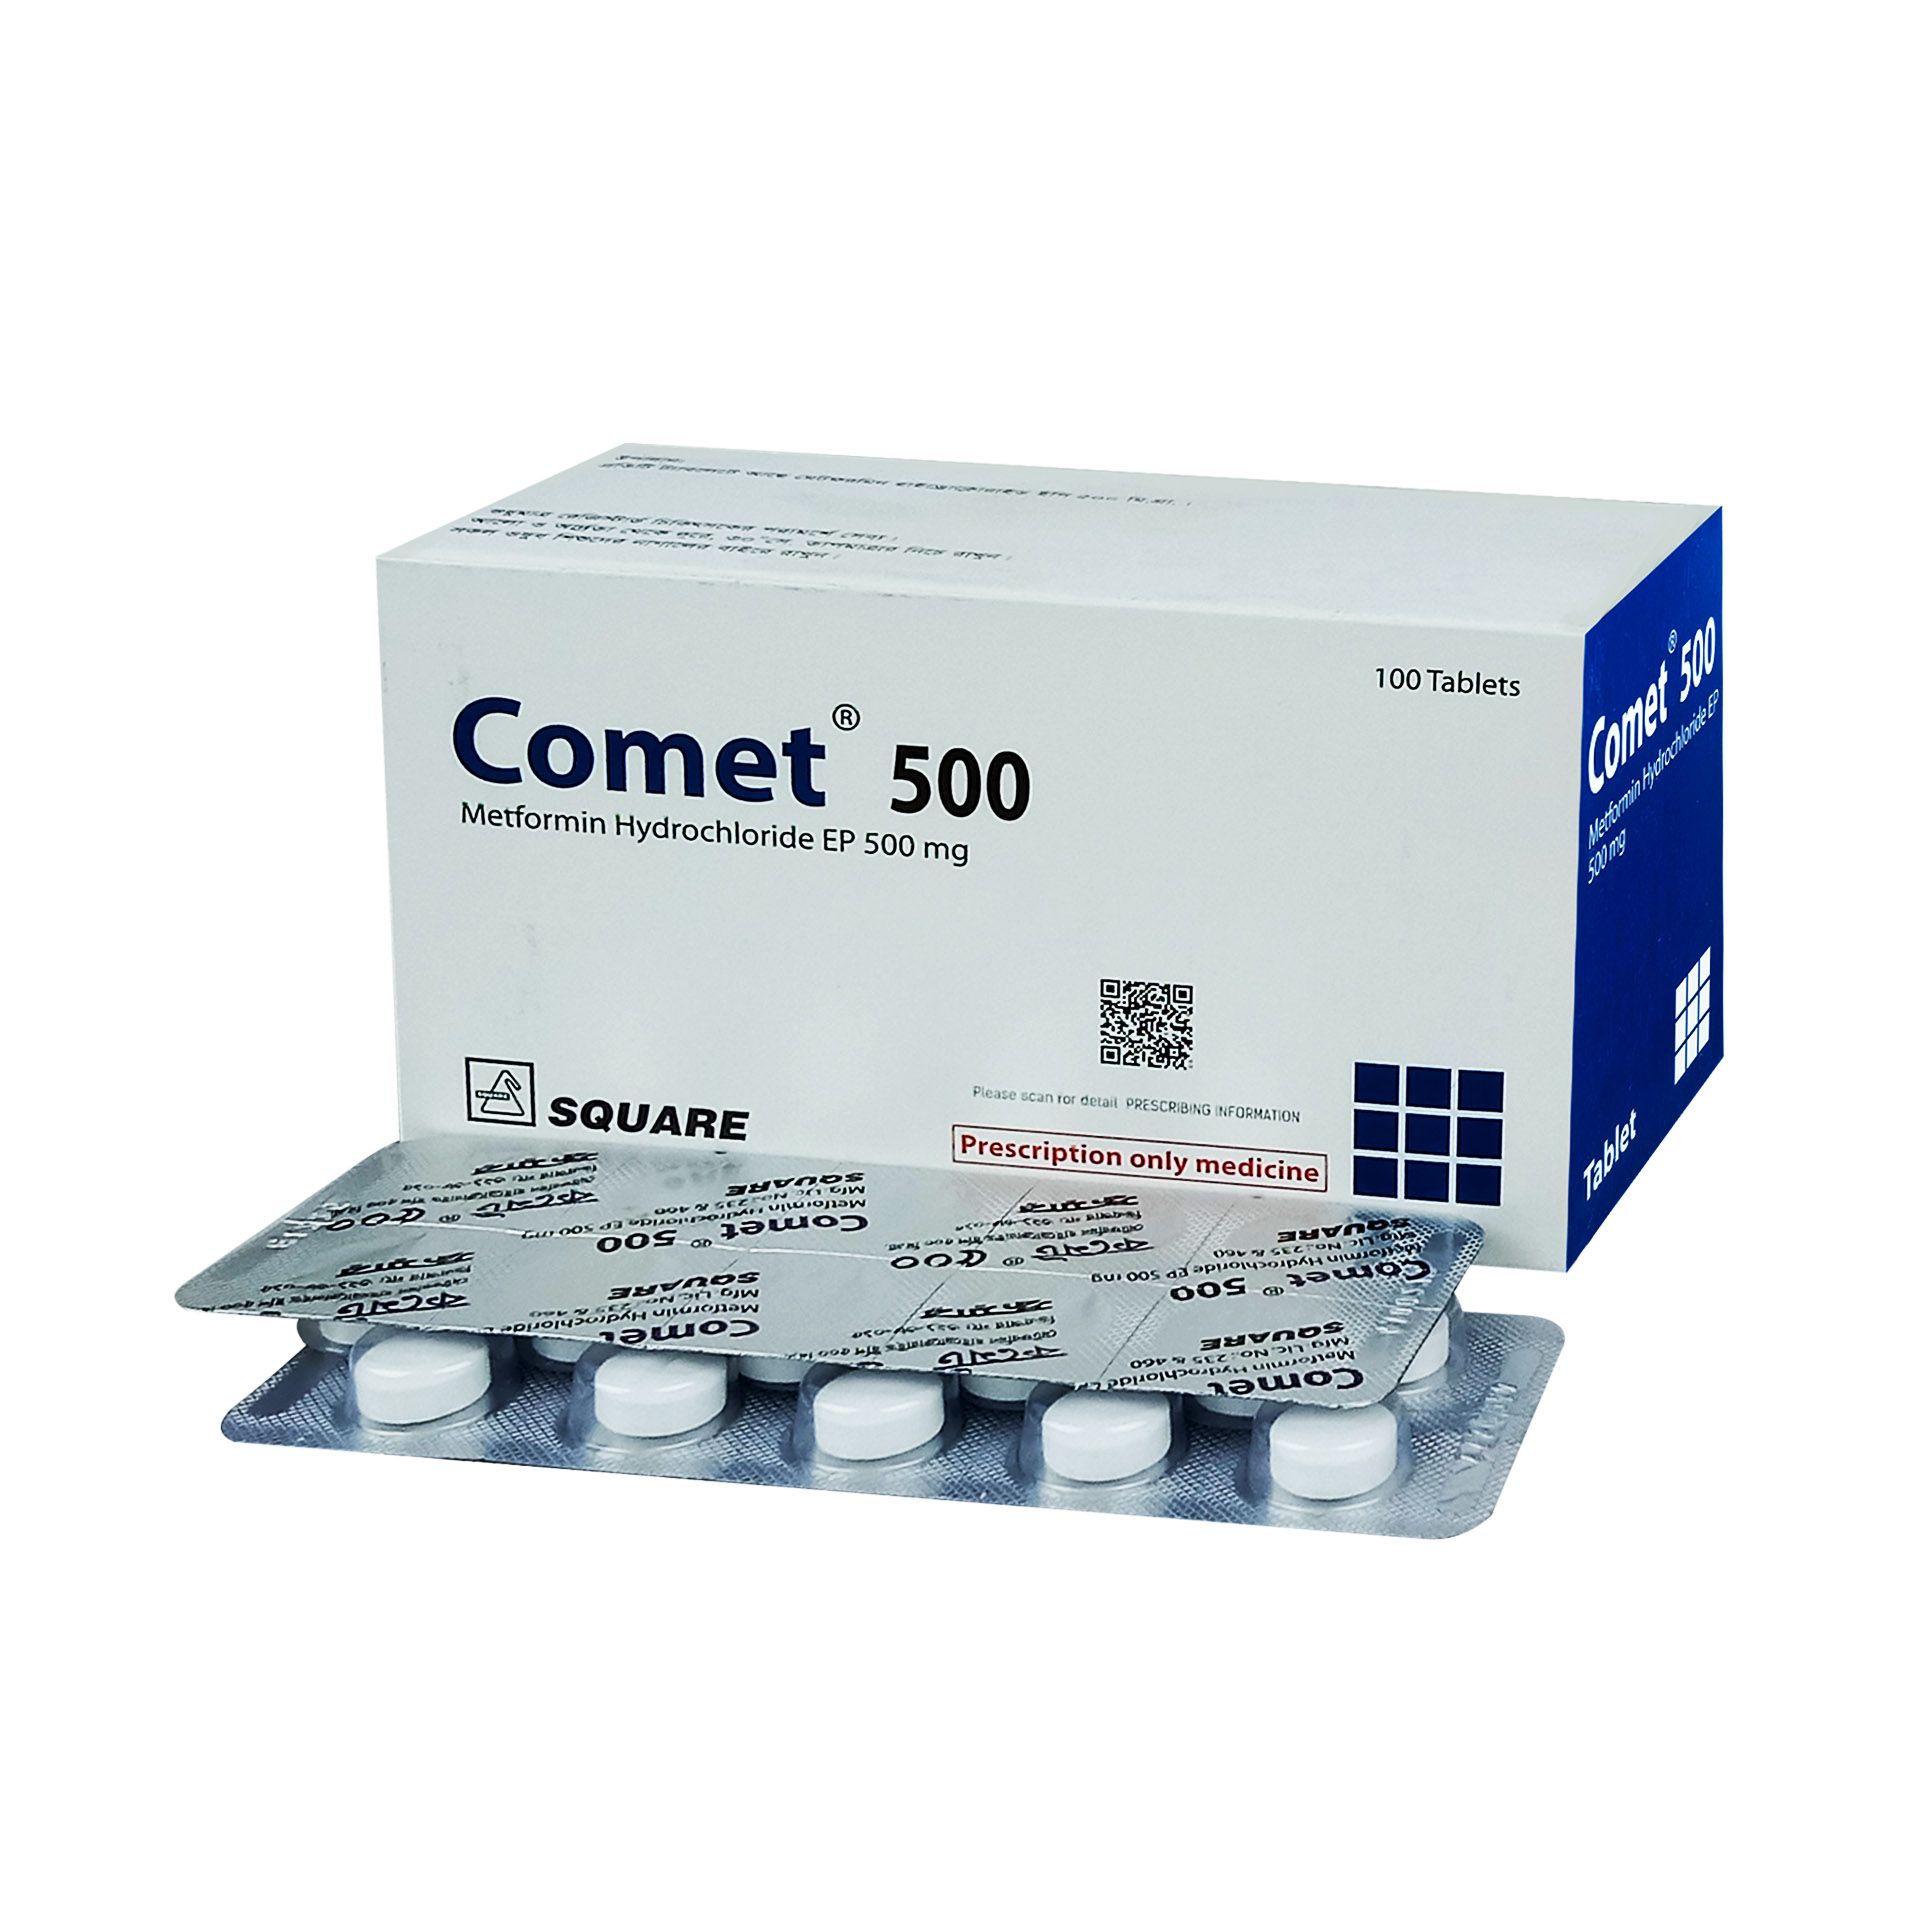 Comet 500